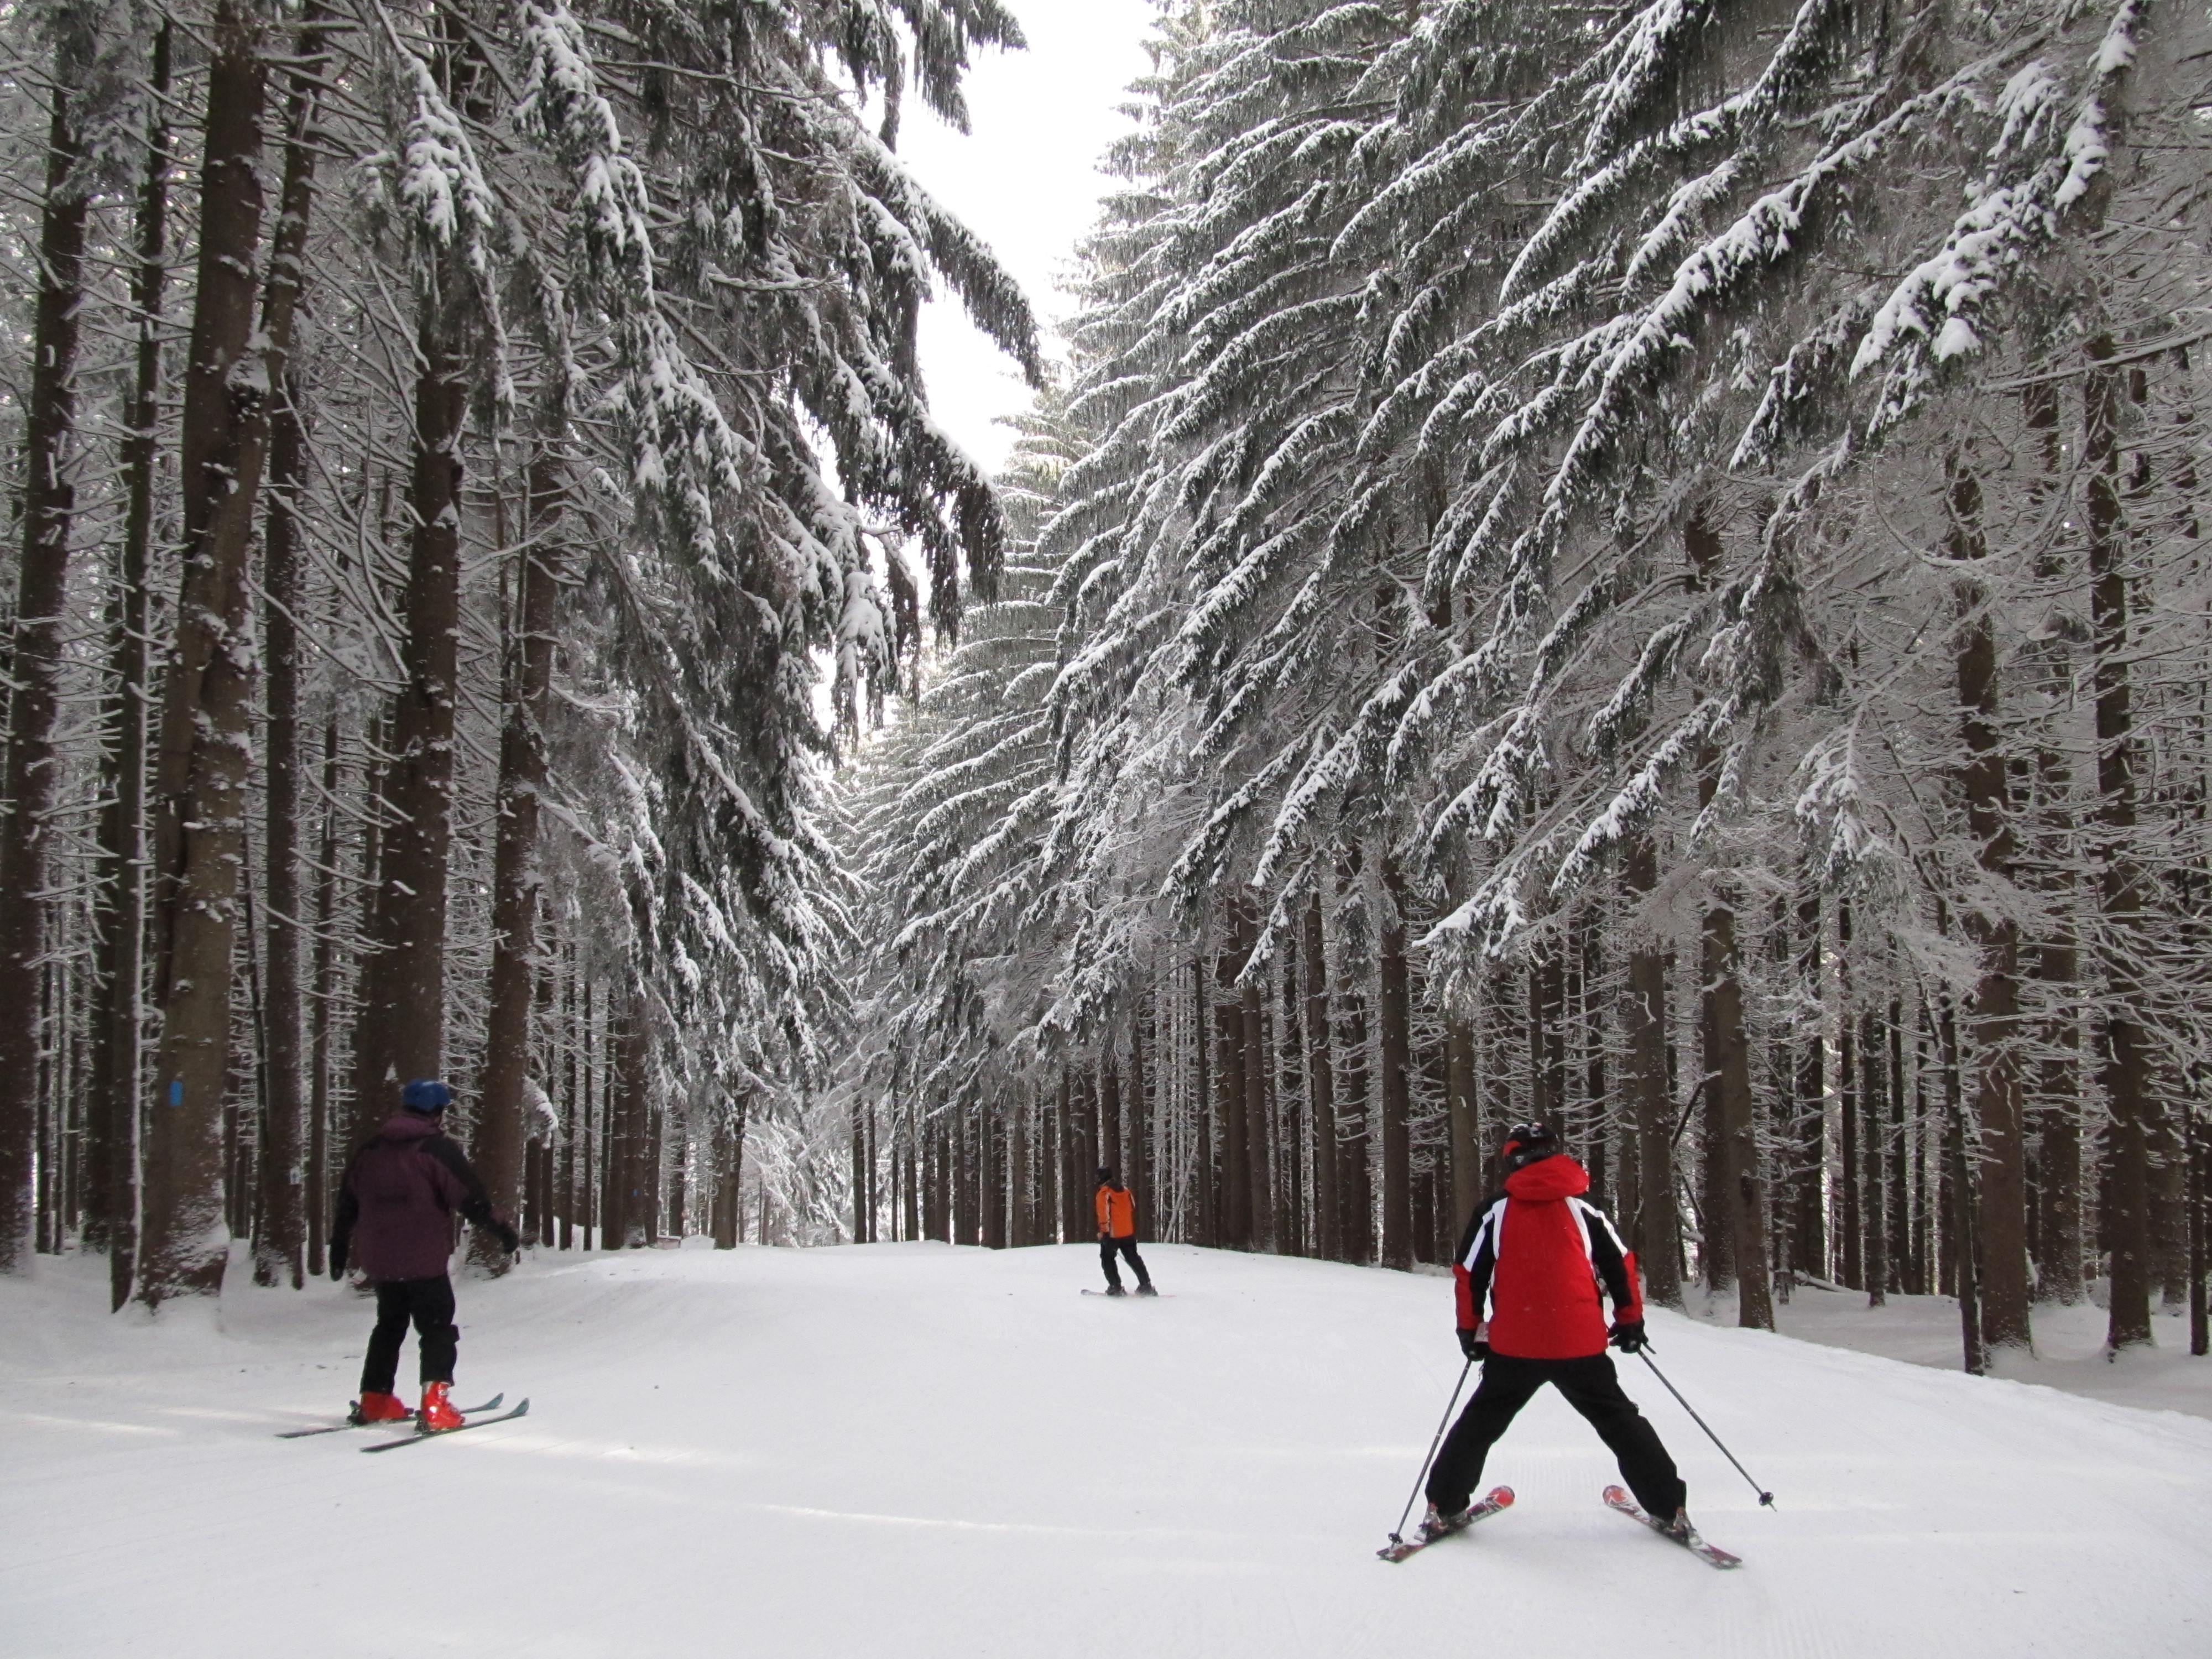 skiing through trees